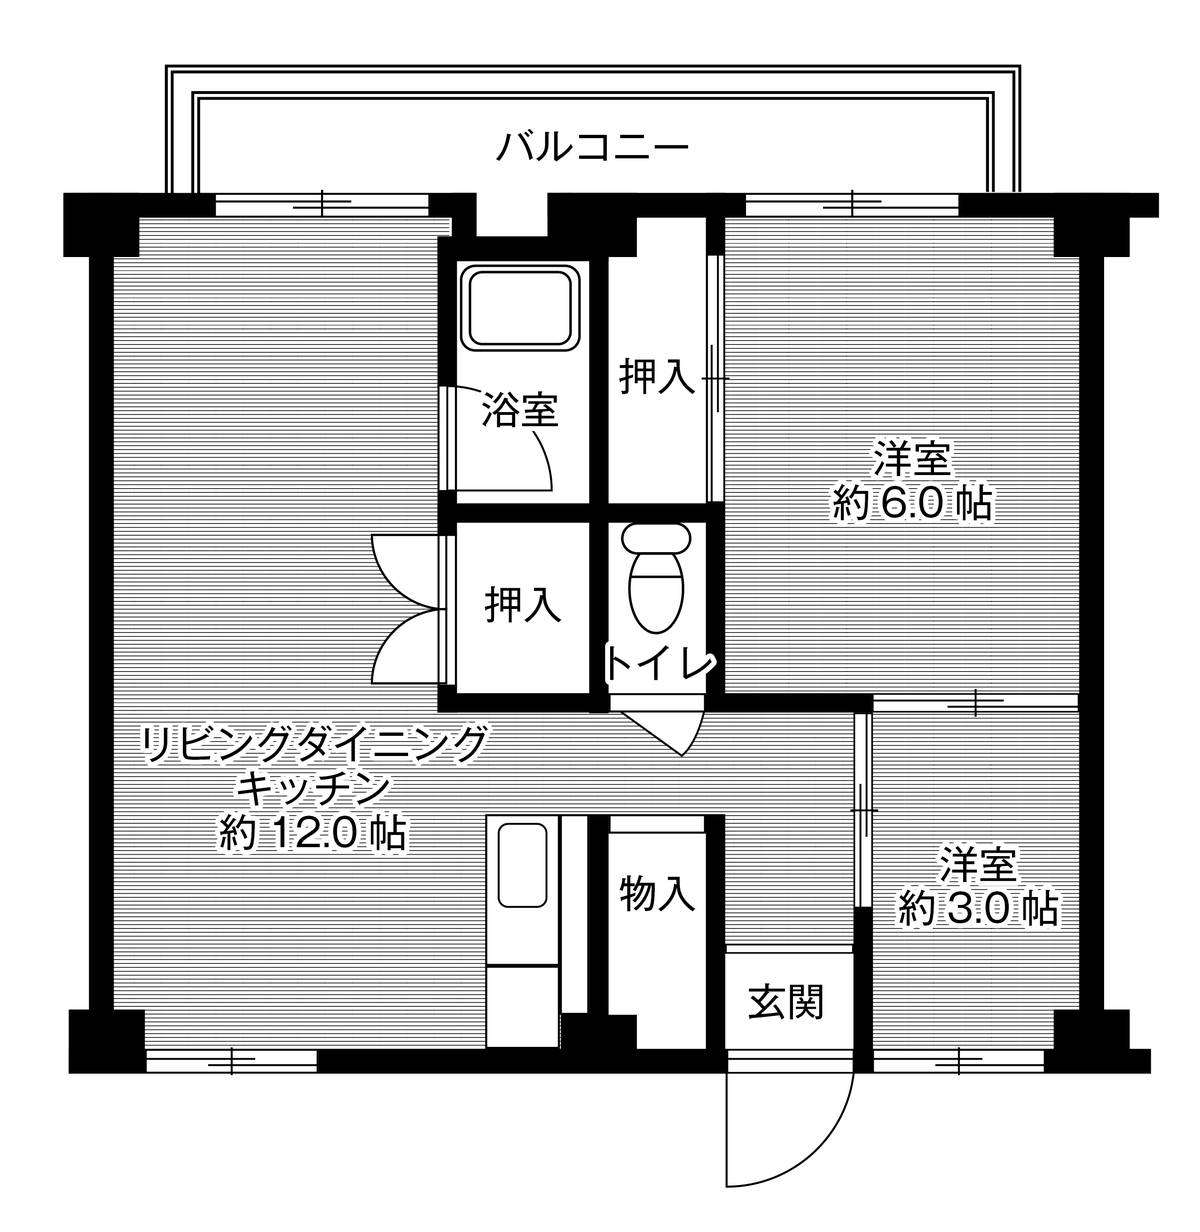 2LDK floorplan of Village House Suzurandai in Kita-ku